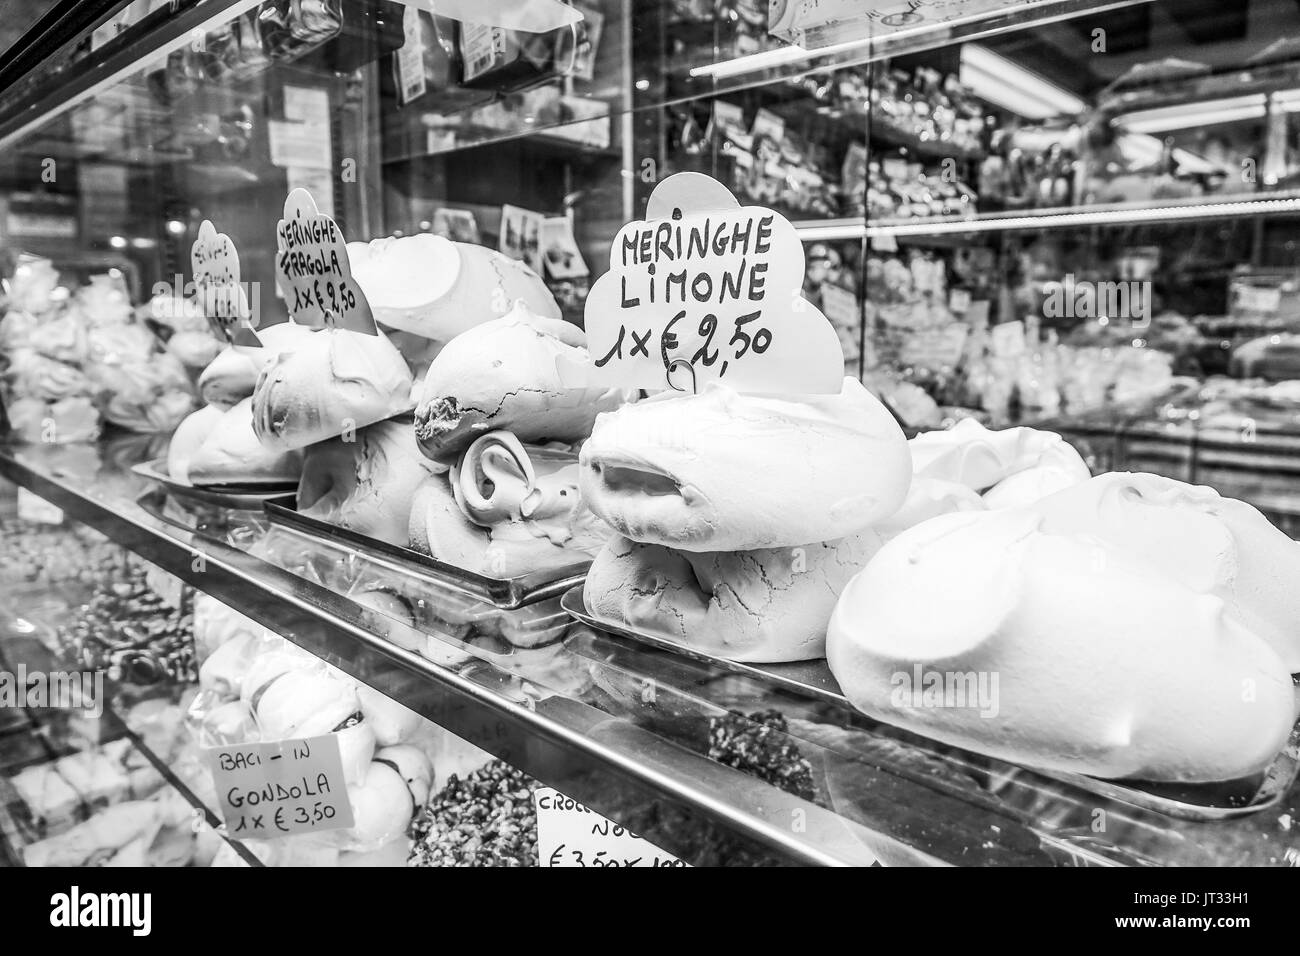 Dolce zucchero cookie Meringhe in vendita a Venezia - Venezia, Italia - 29 giugno 2016 Foto Stock